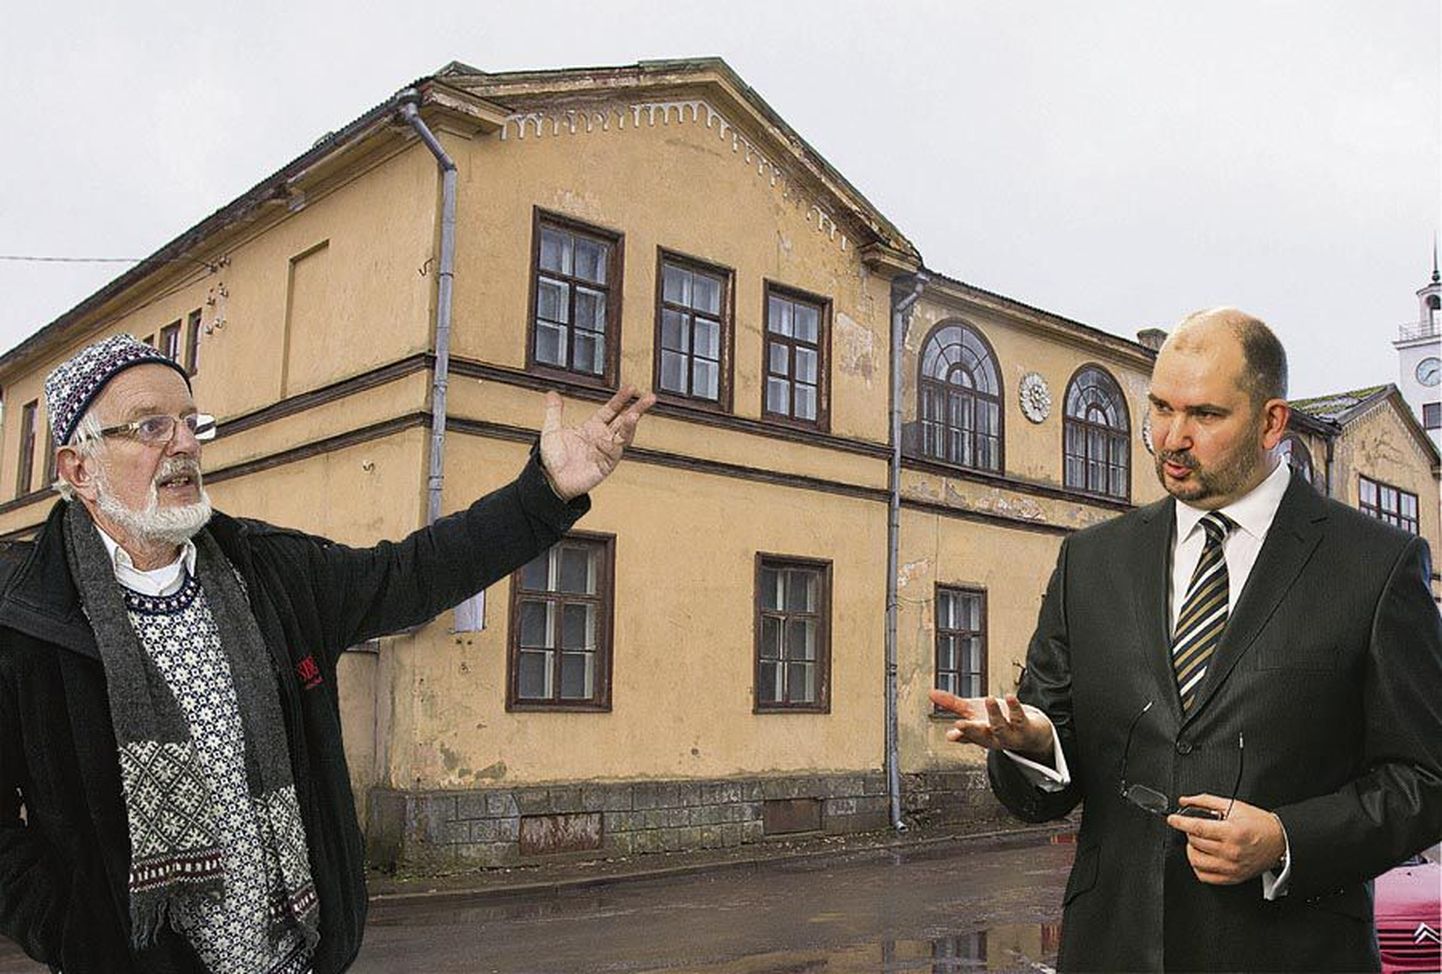 Uue kunsti muuseumi juht Mark Soosaar (vasakul) pole maha matnud lootust Linnu tänava maja tagasi saada. Viljandi linnapea Ando Kiviberg ei näe põhjust ega ka võimalust volikogu otsust muuta, kuid soovib muuseumiga koostööd jätkata.